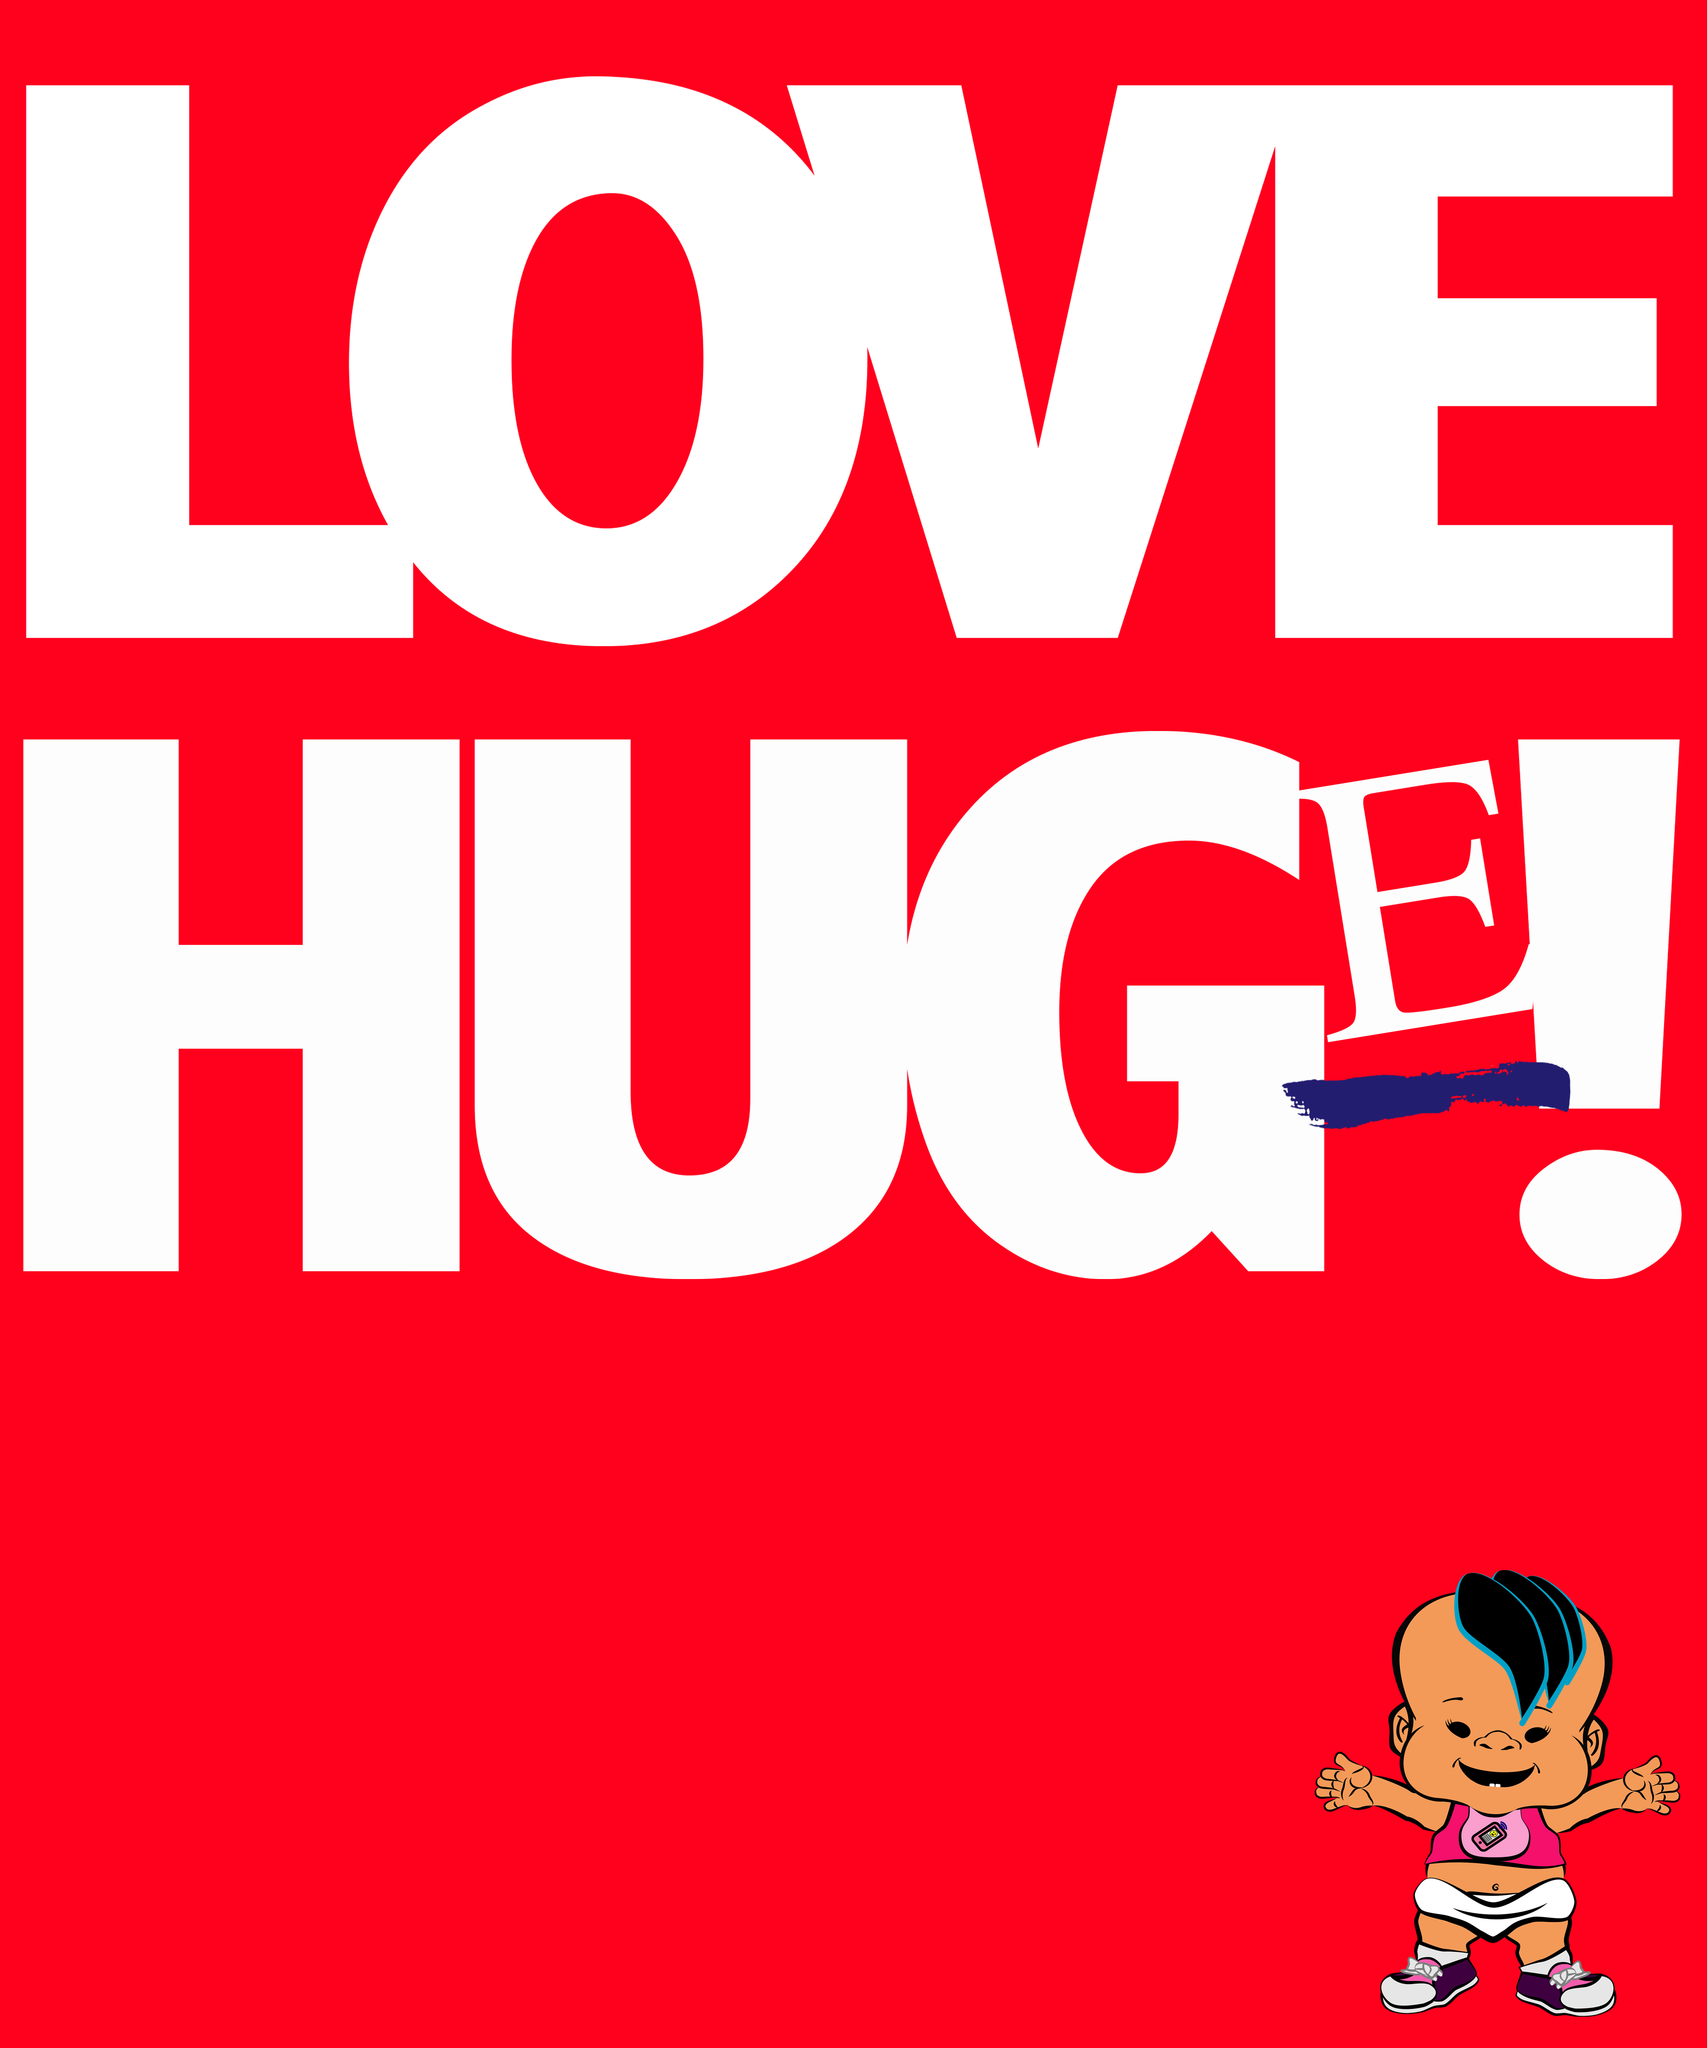 PBHZ1244_Love_Hug(e)_girl_1_Red